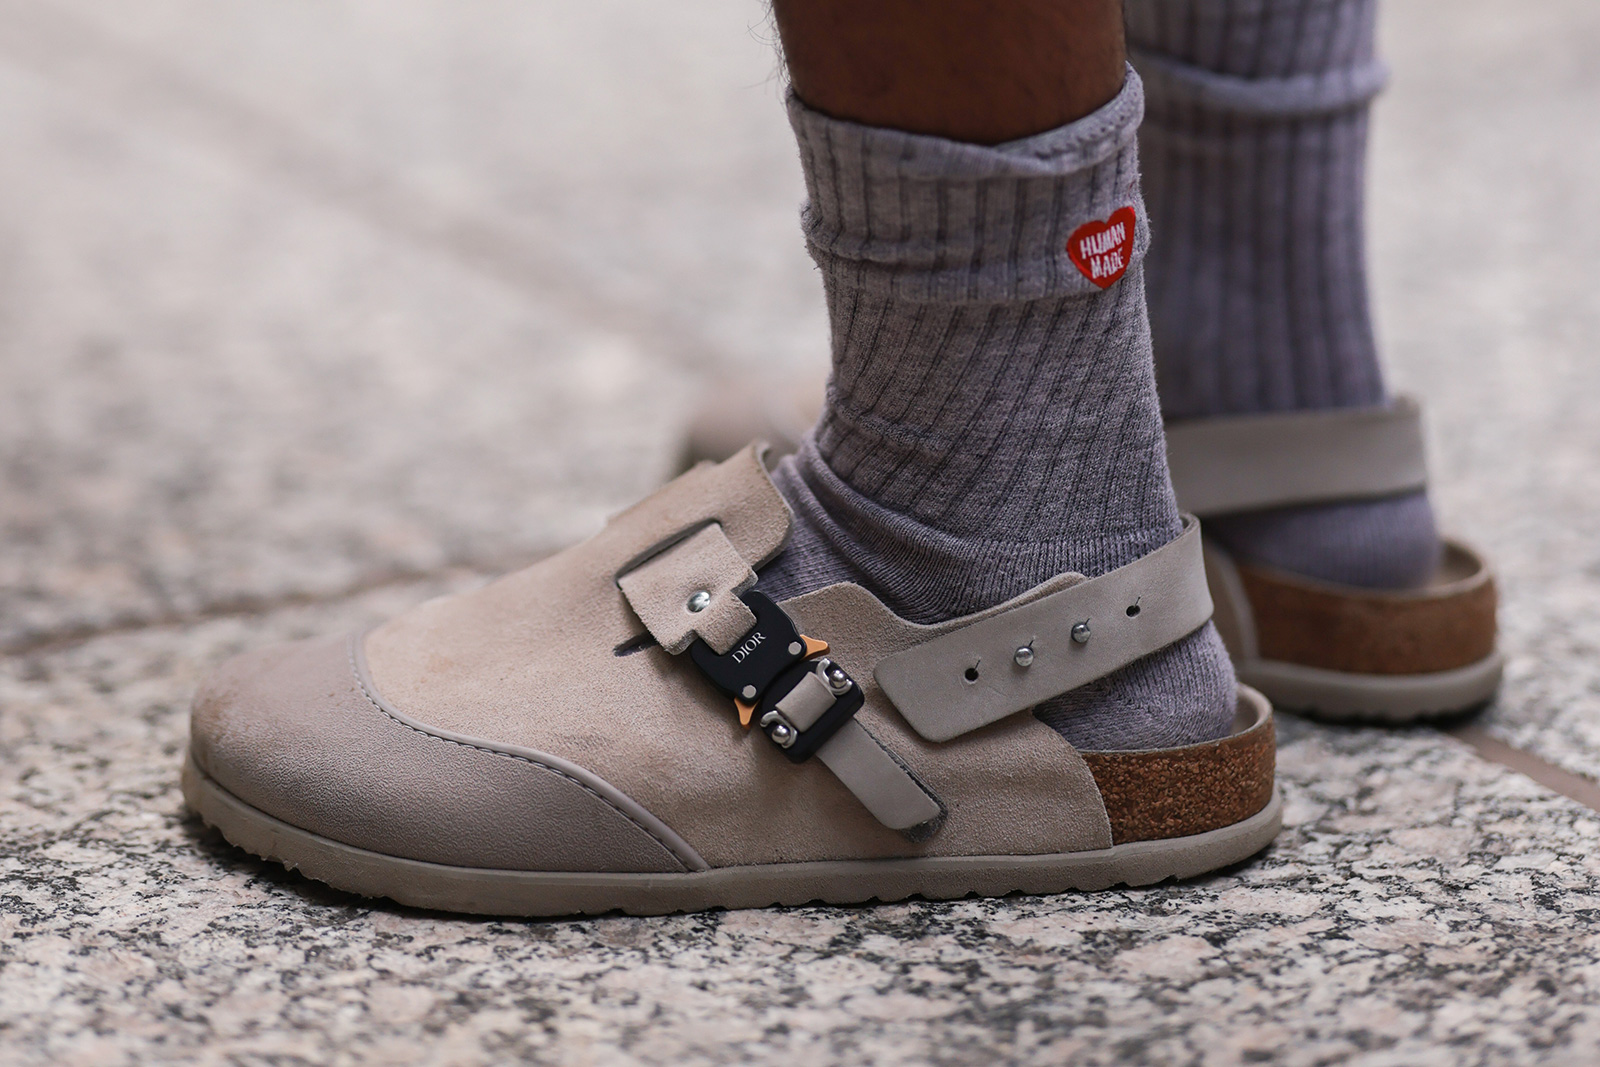 Men's Style Tips: Black Socks in the Summer